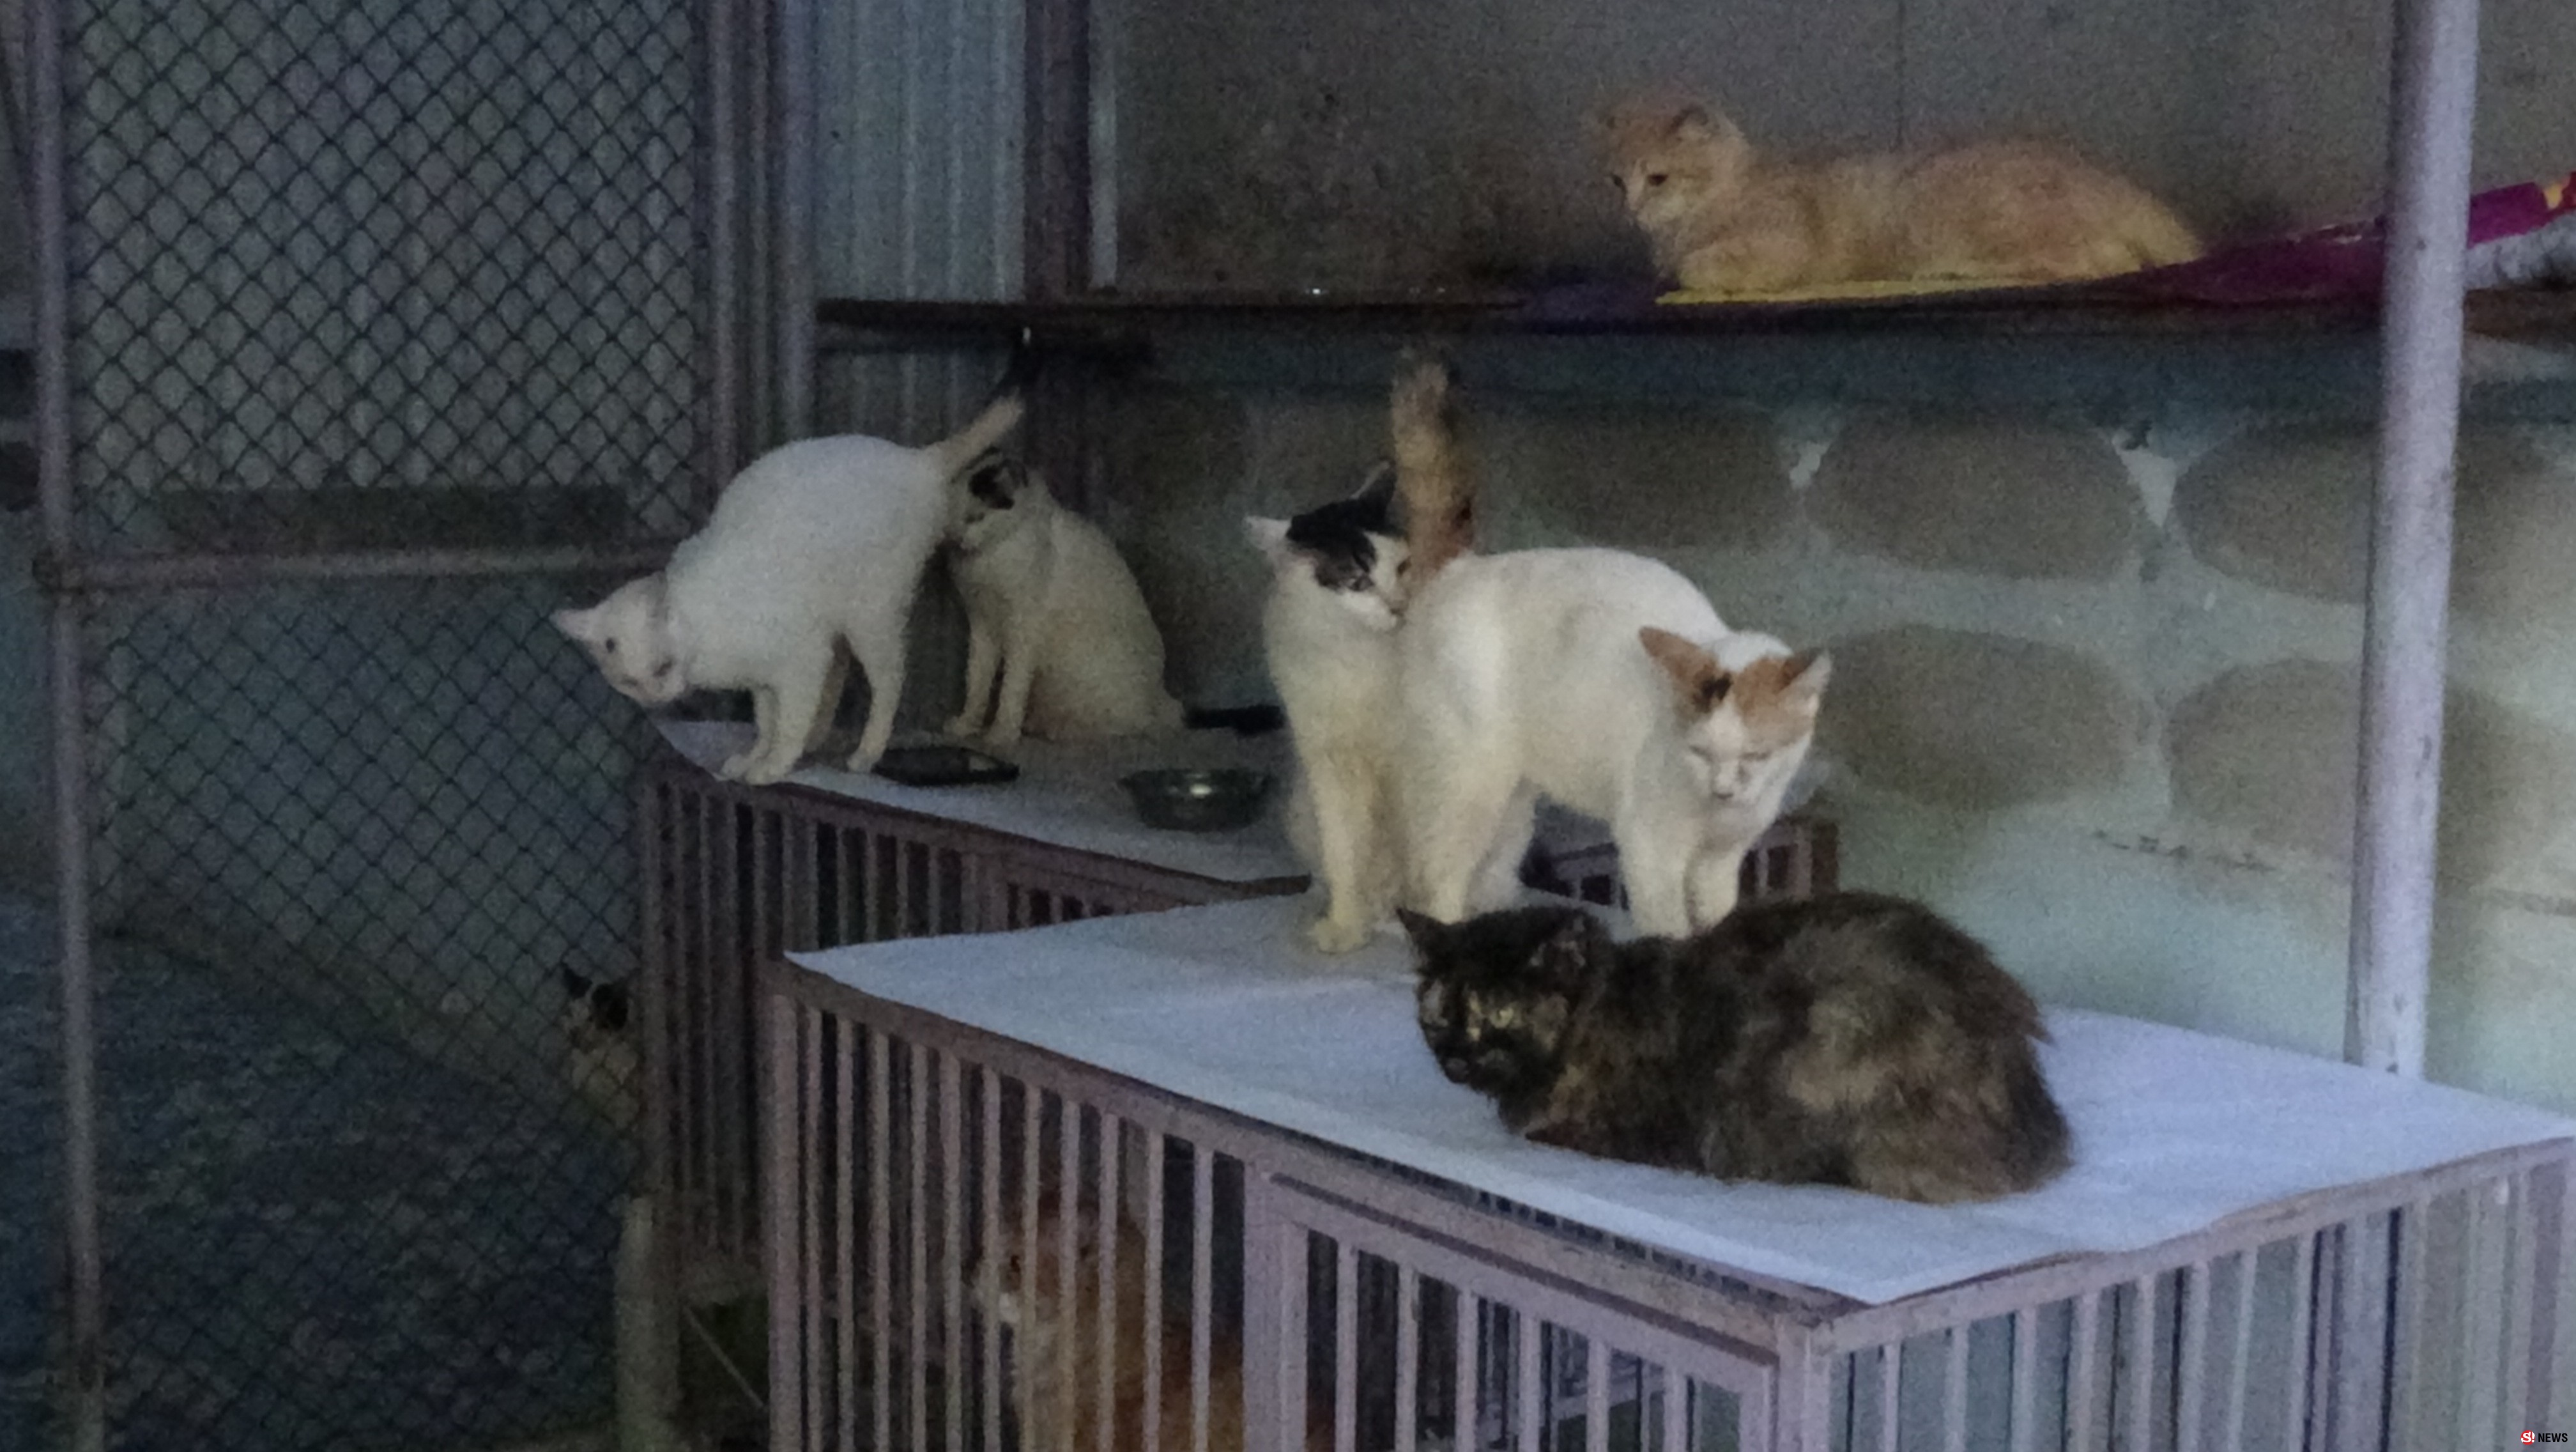 สตูลผู้เลี้ยงแมวกว่า80ตัวในบ้านวอนขอความเป็นเมตตาและหาทางออกกรณีถูกร้องเรียนเหม็นขี้แมวส่งกลิ่นเหม็น